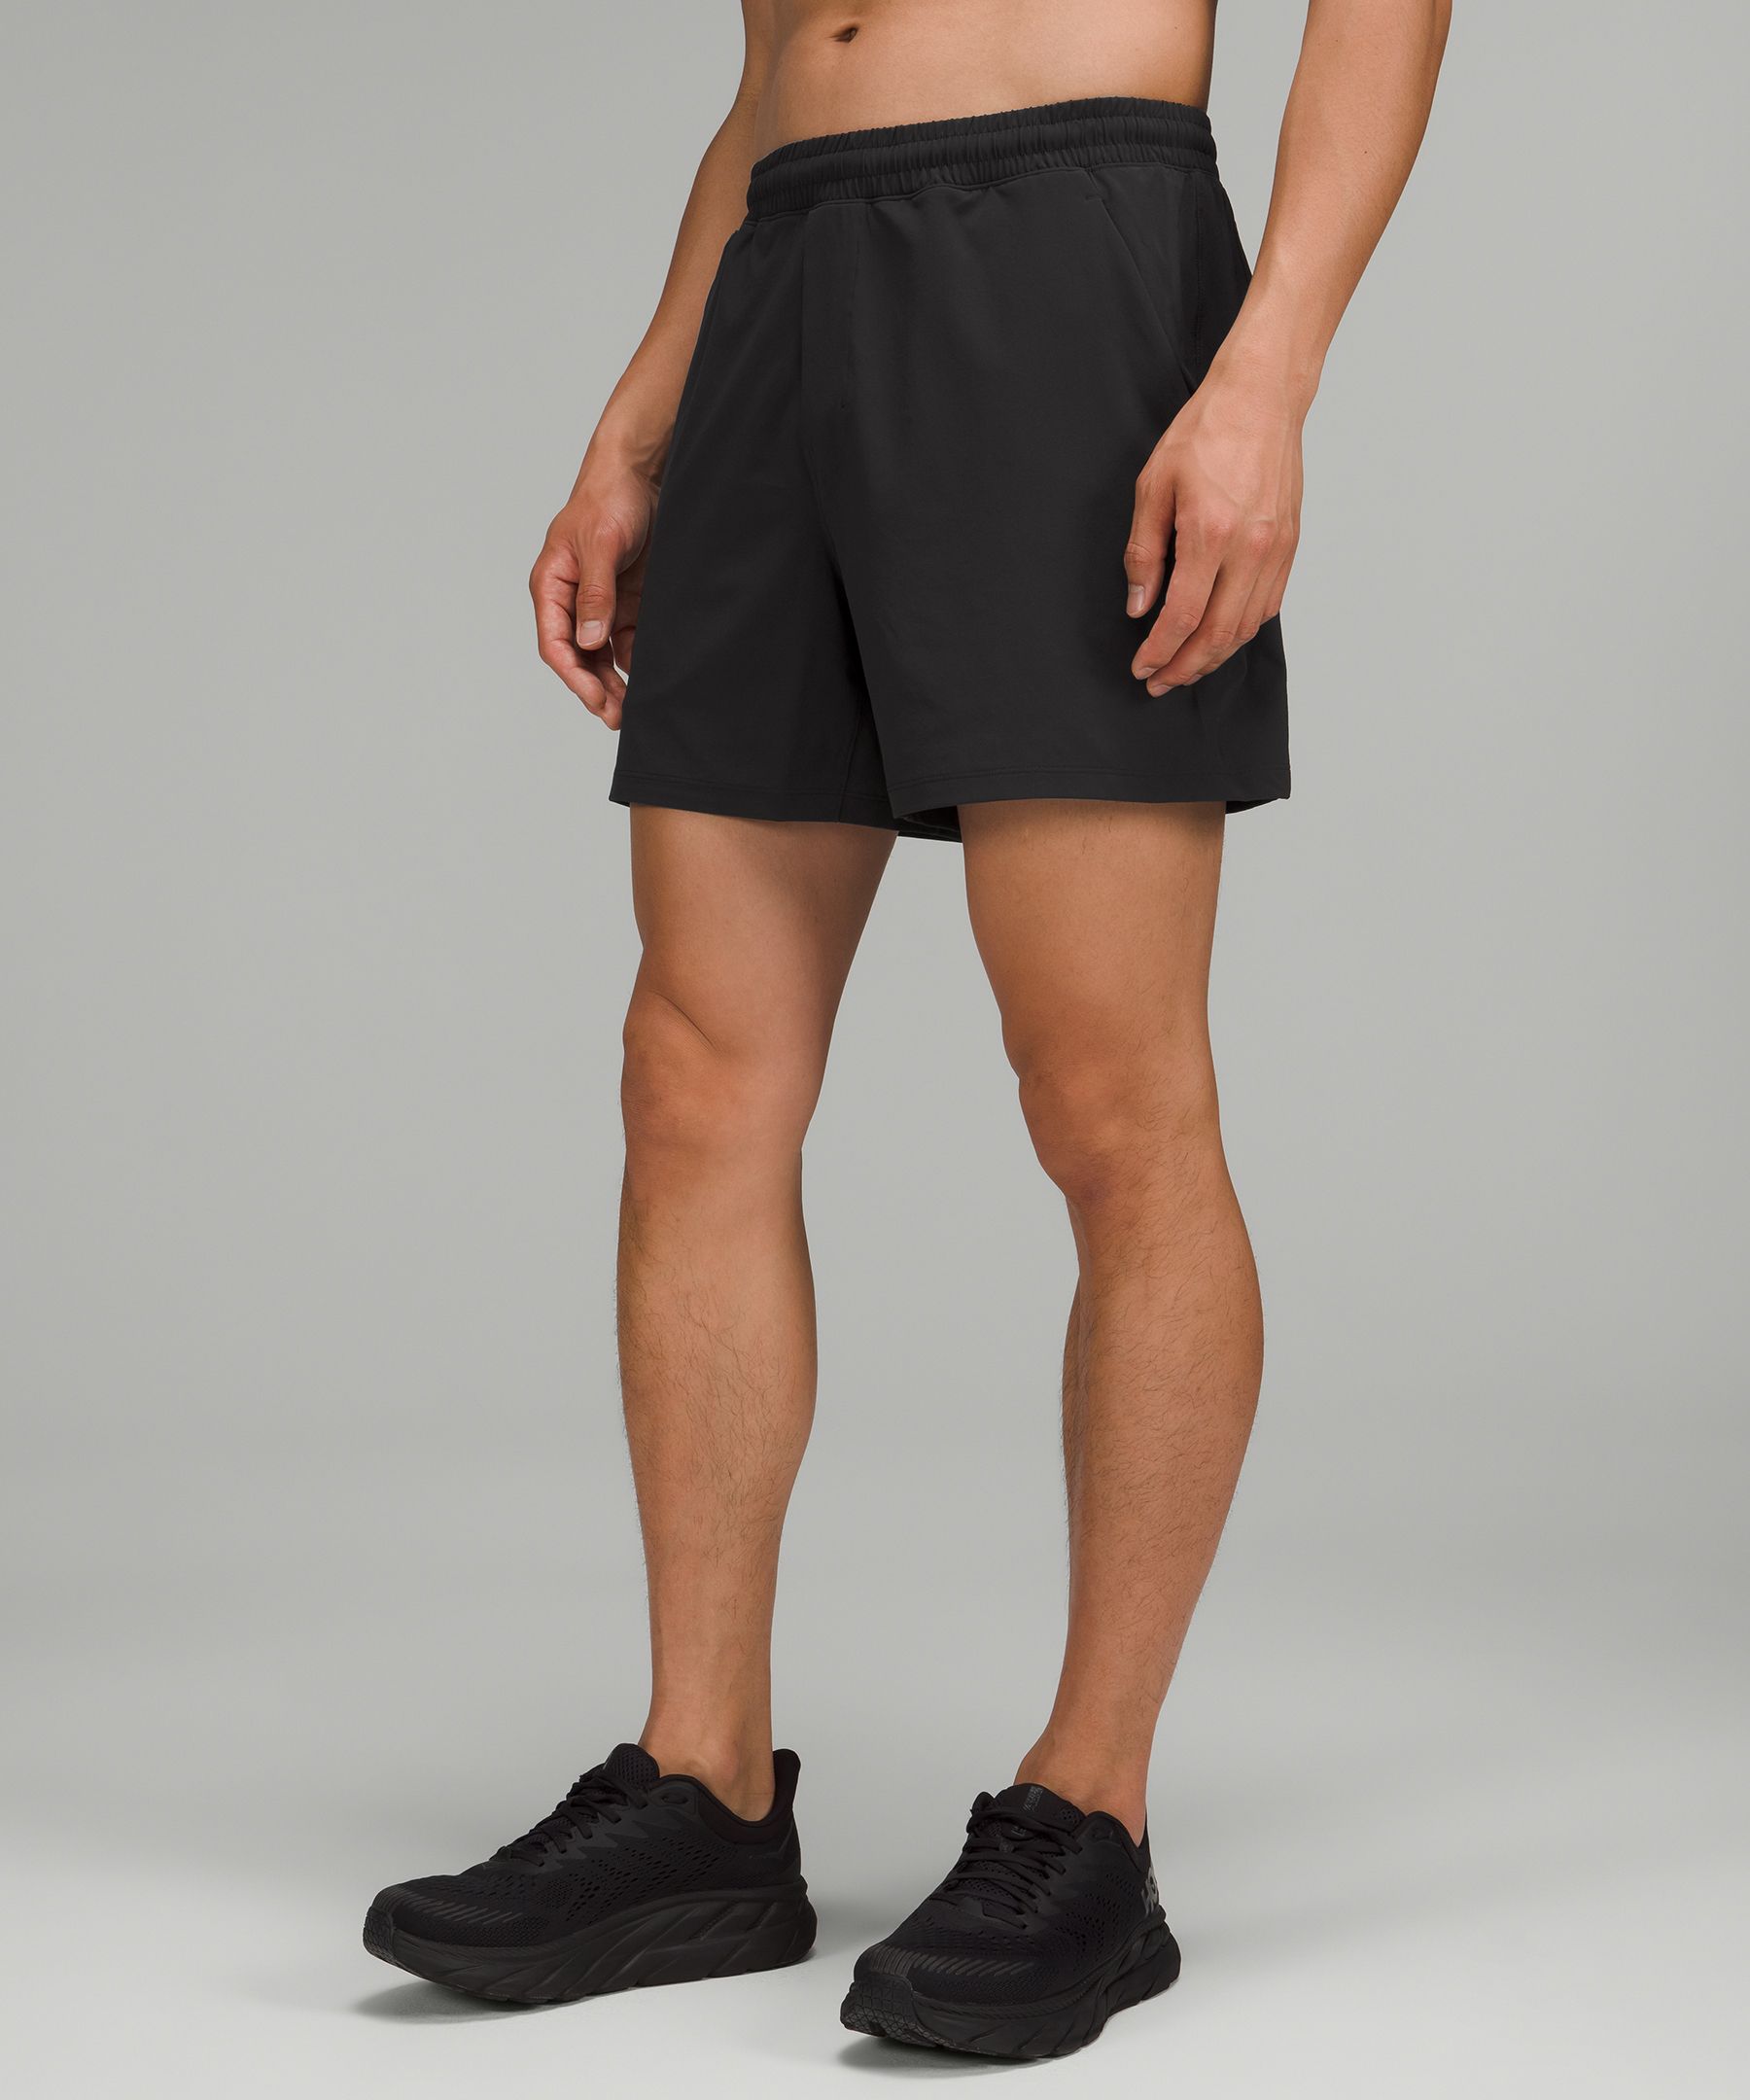 men's shorts lululemon